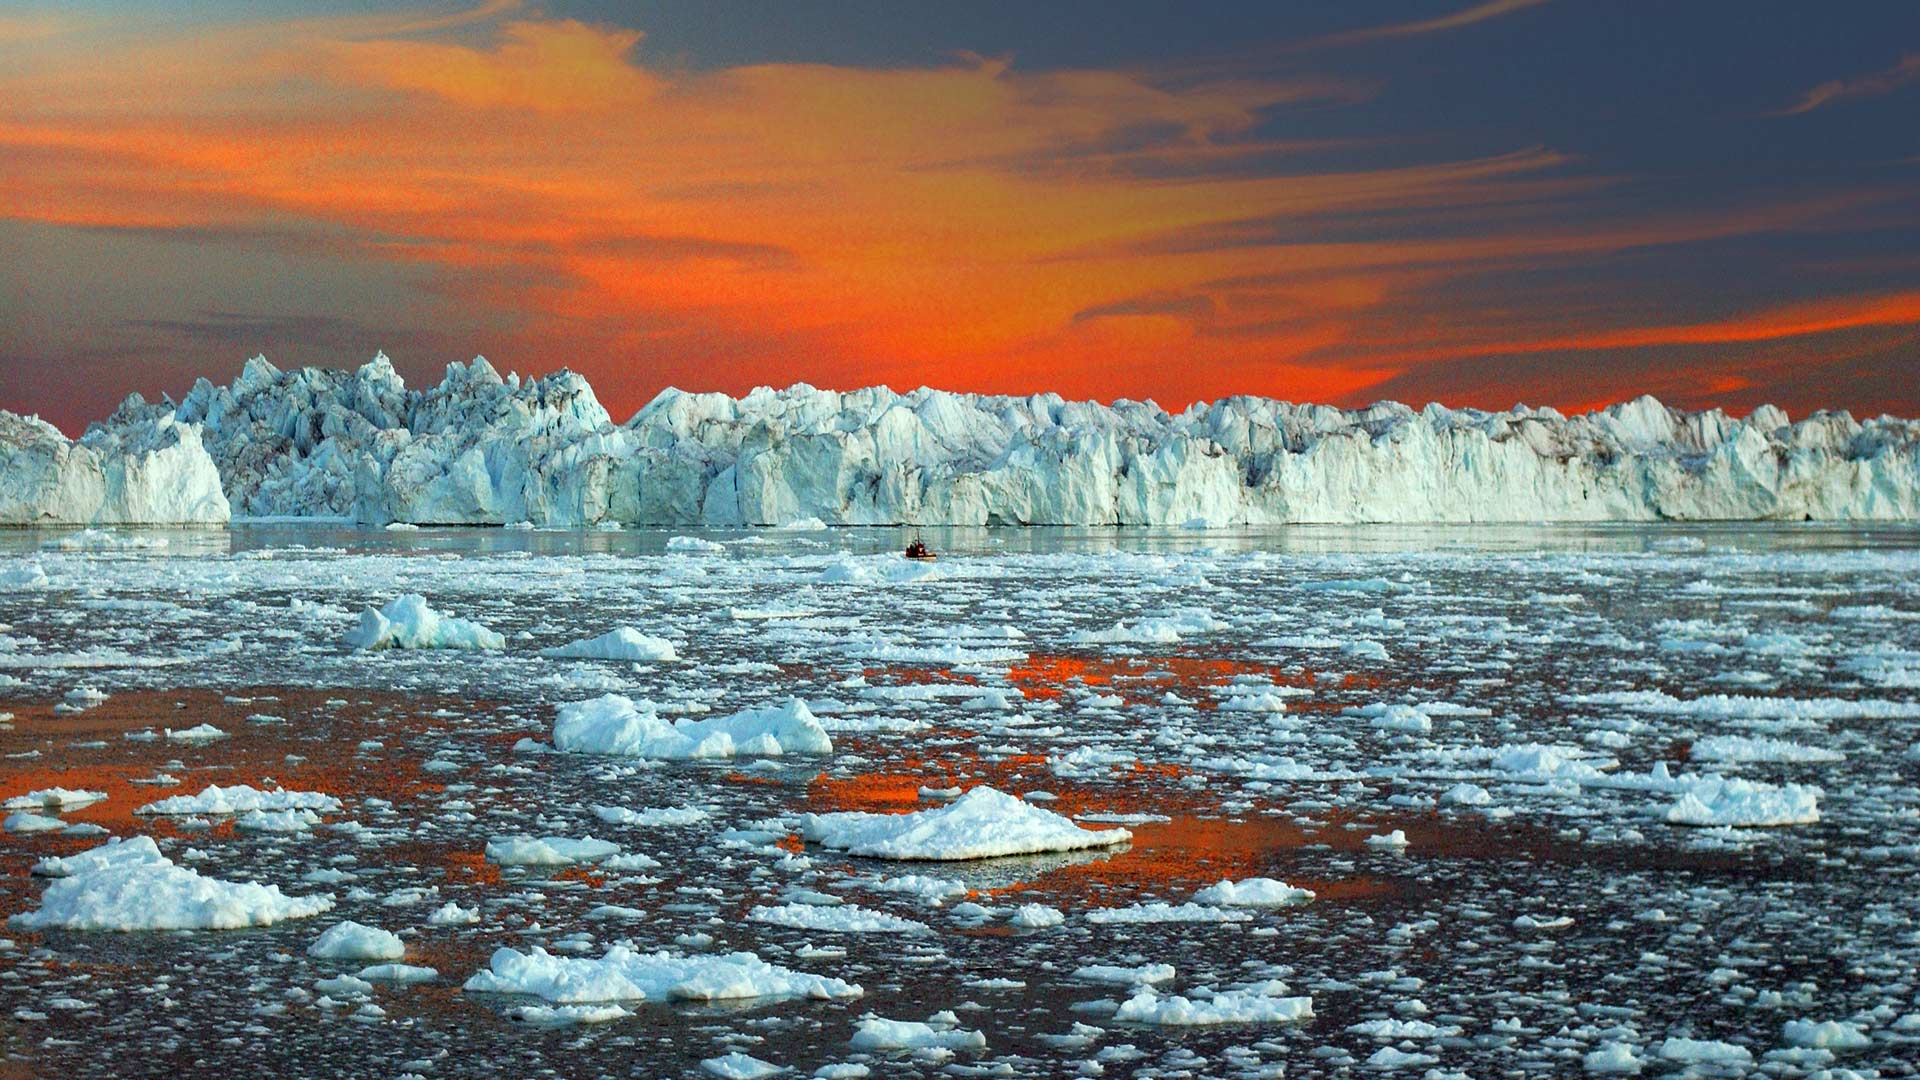 Відео, яке не залишить байдужим нікого: ось як виглядає руйнування одного з найбільших льодовиків світу